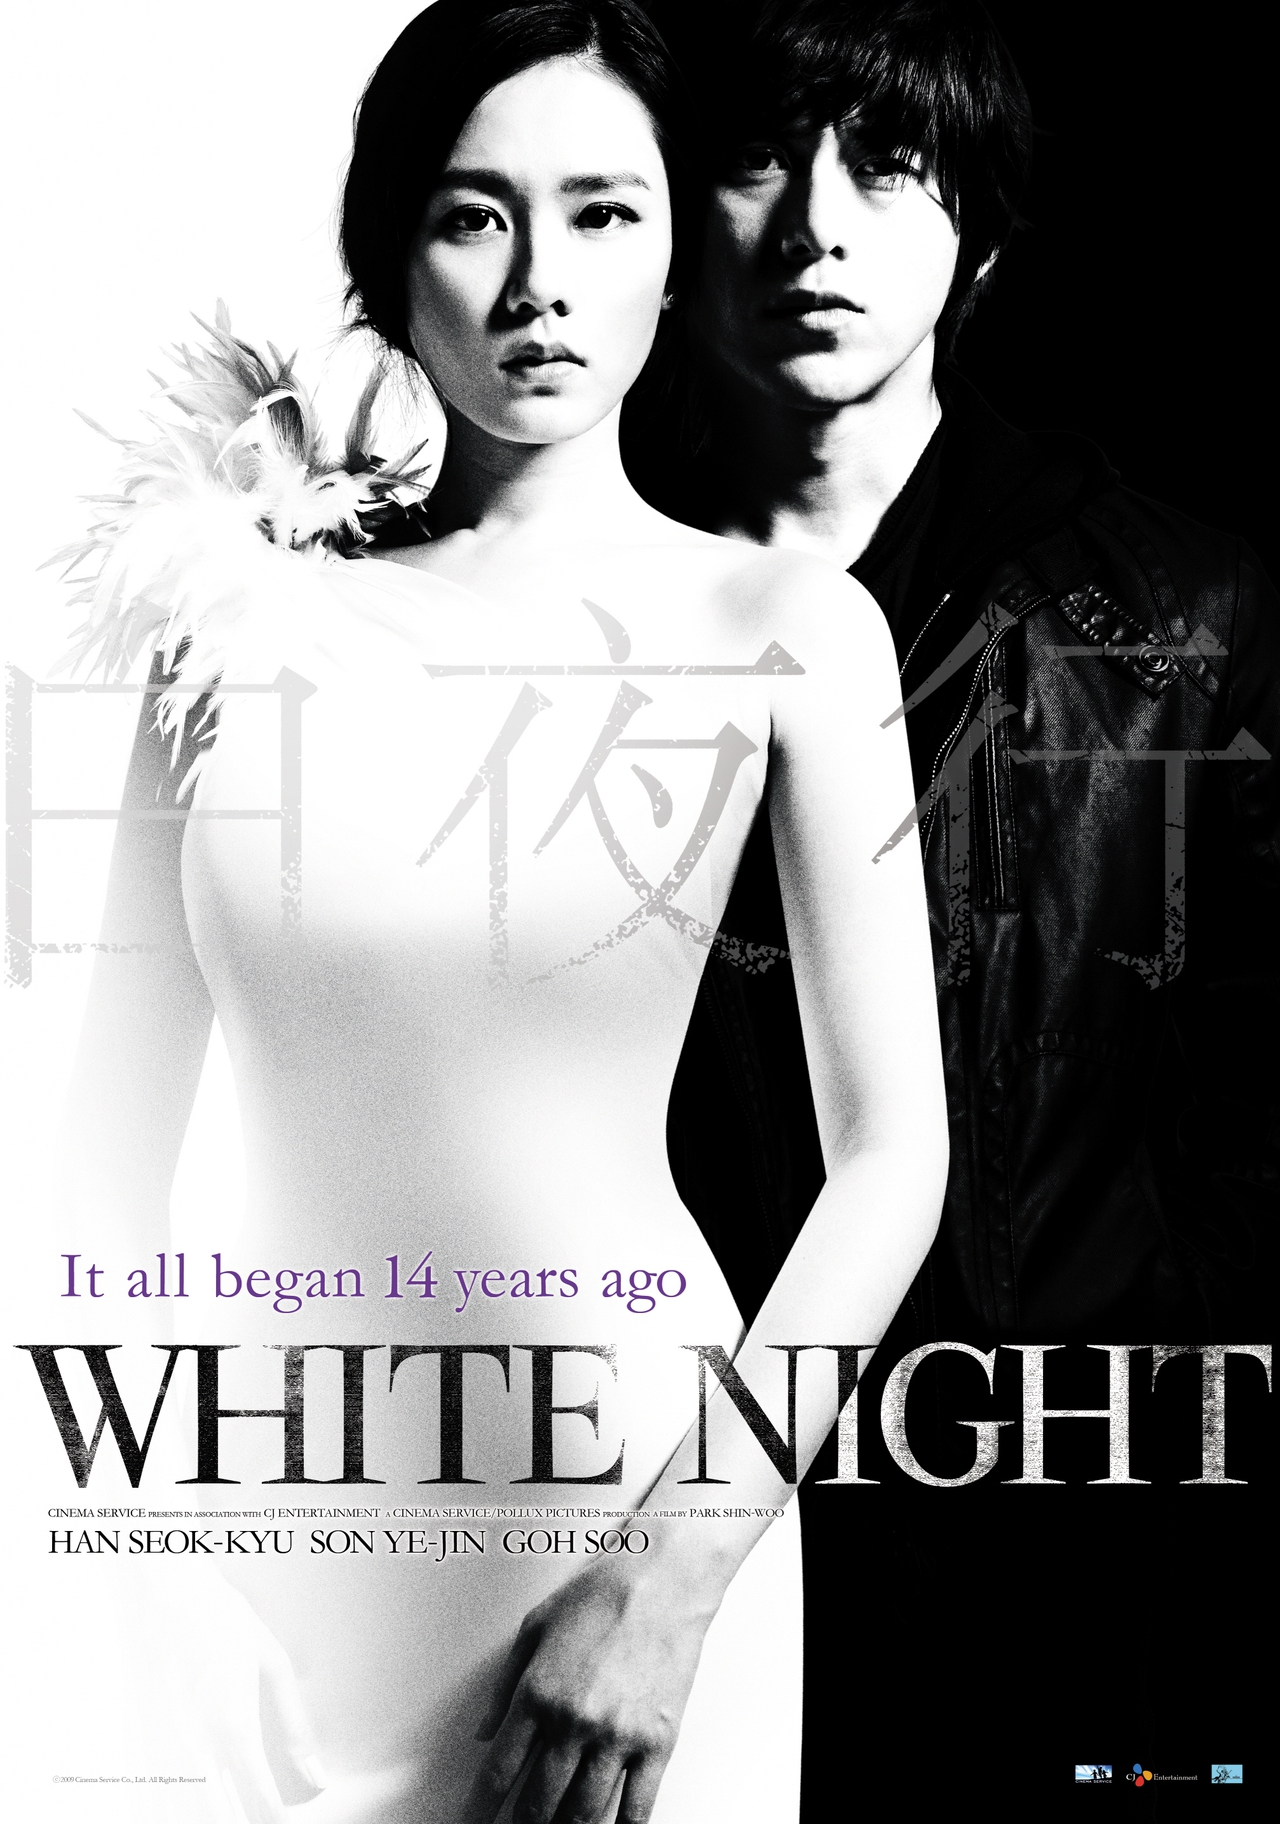  فیلم سینمایی White Night با حضور Ye-jin Son، Suk-kyu Han و Soo Go